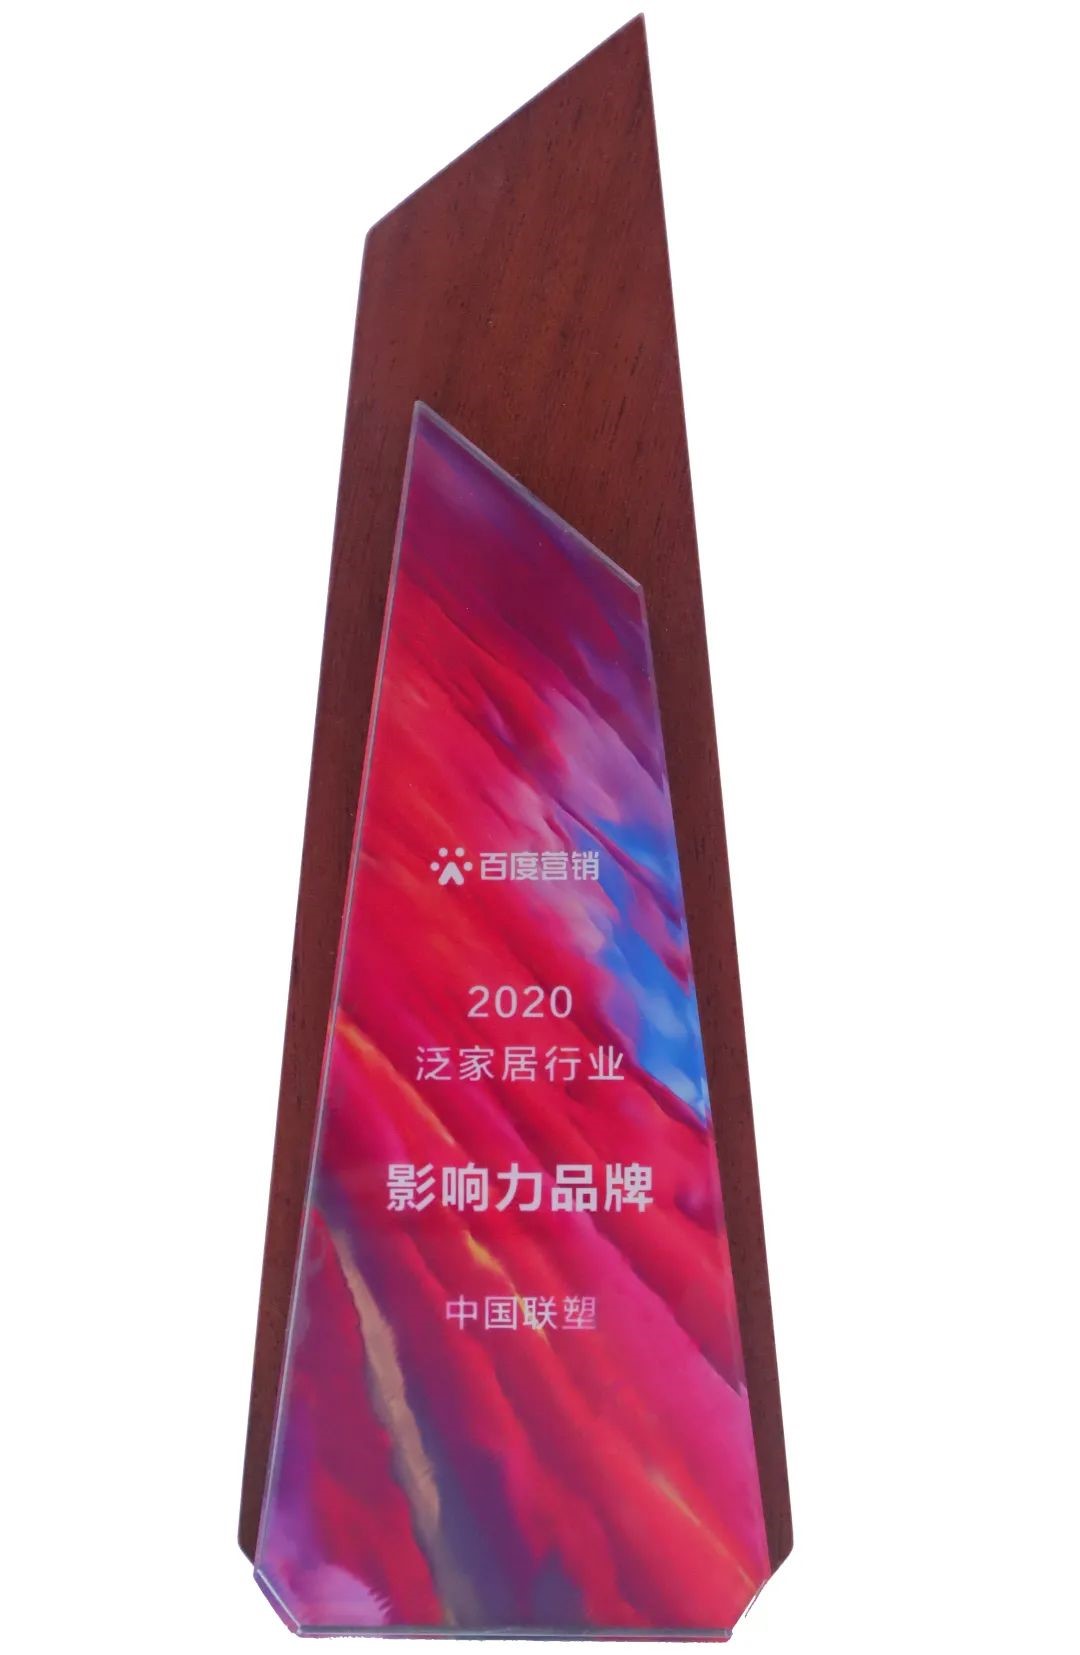 中国欧宝体育app荣获“2020泛家居行业影响力品牌”